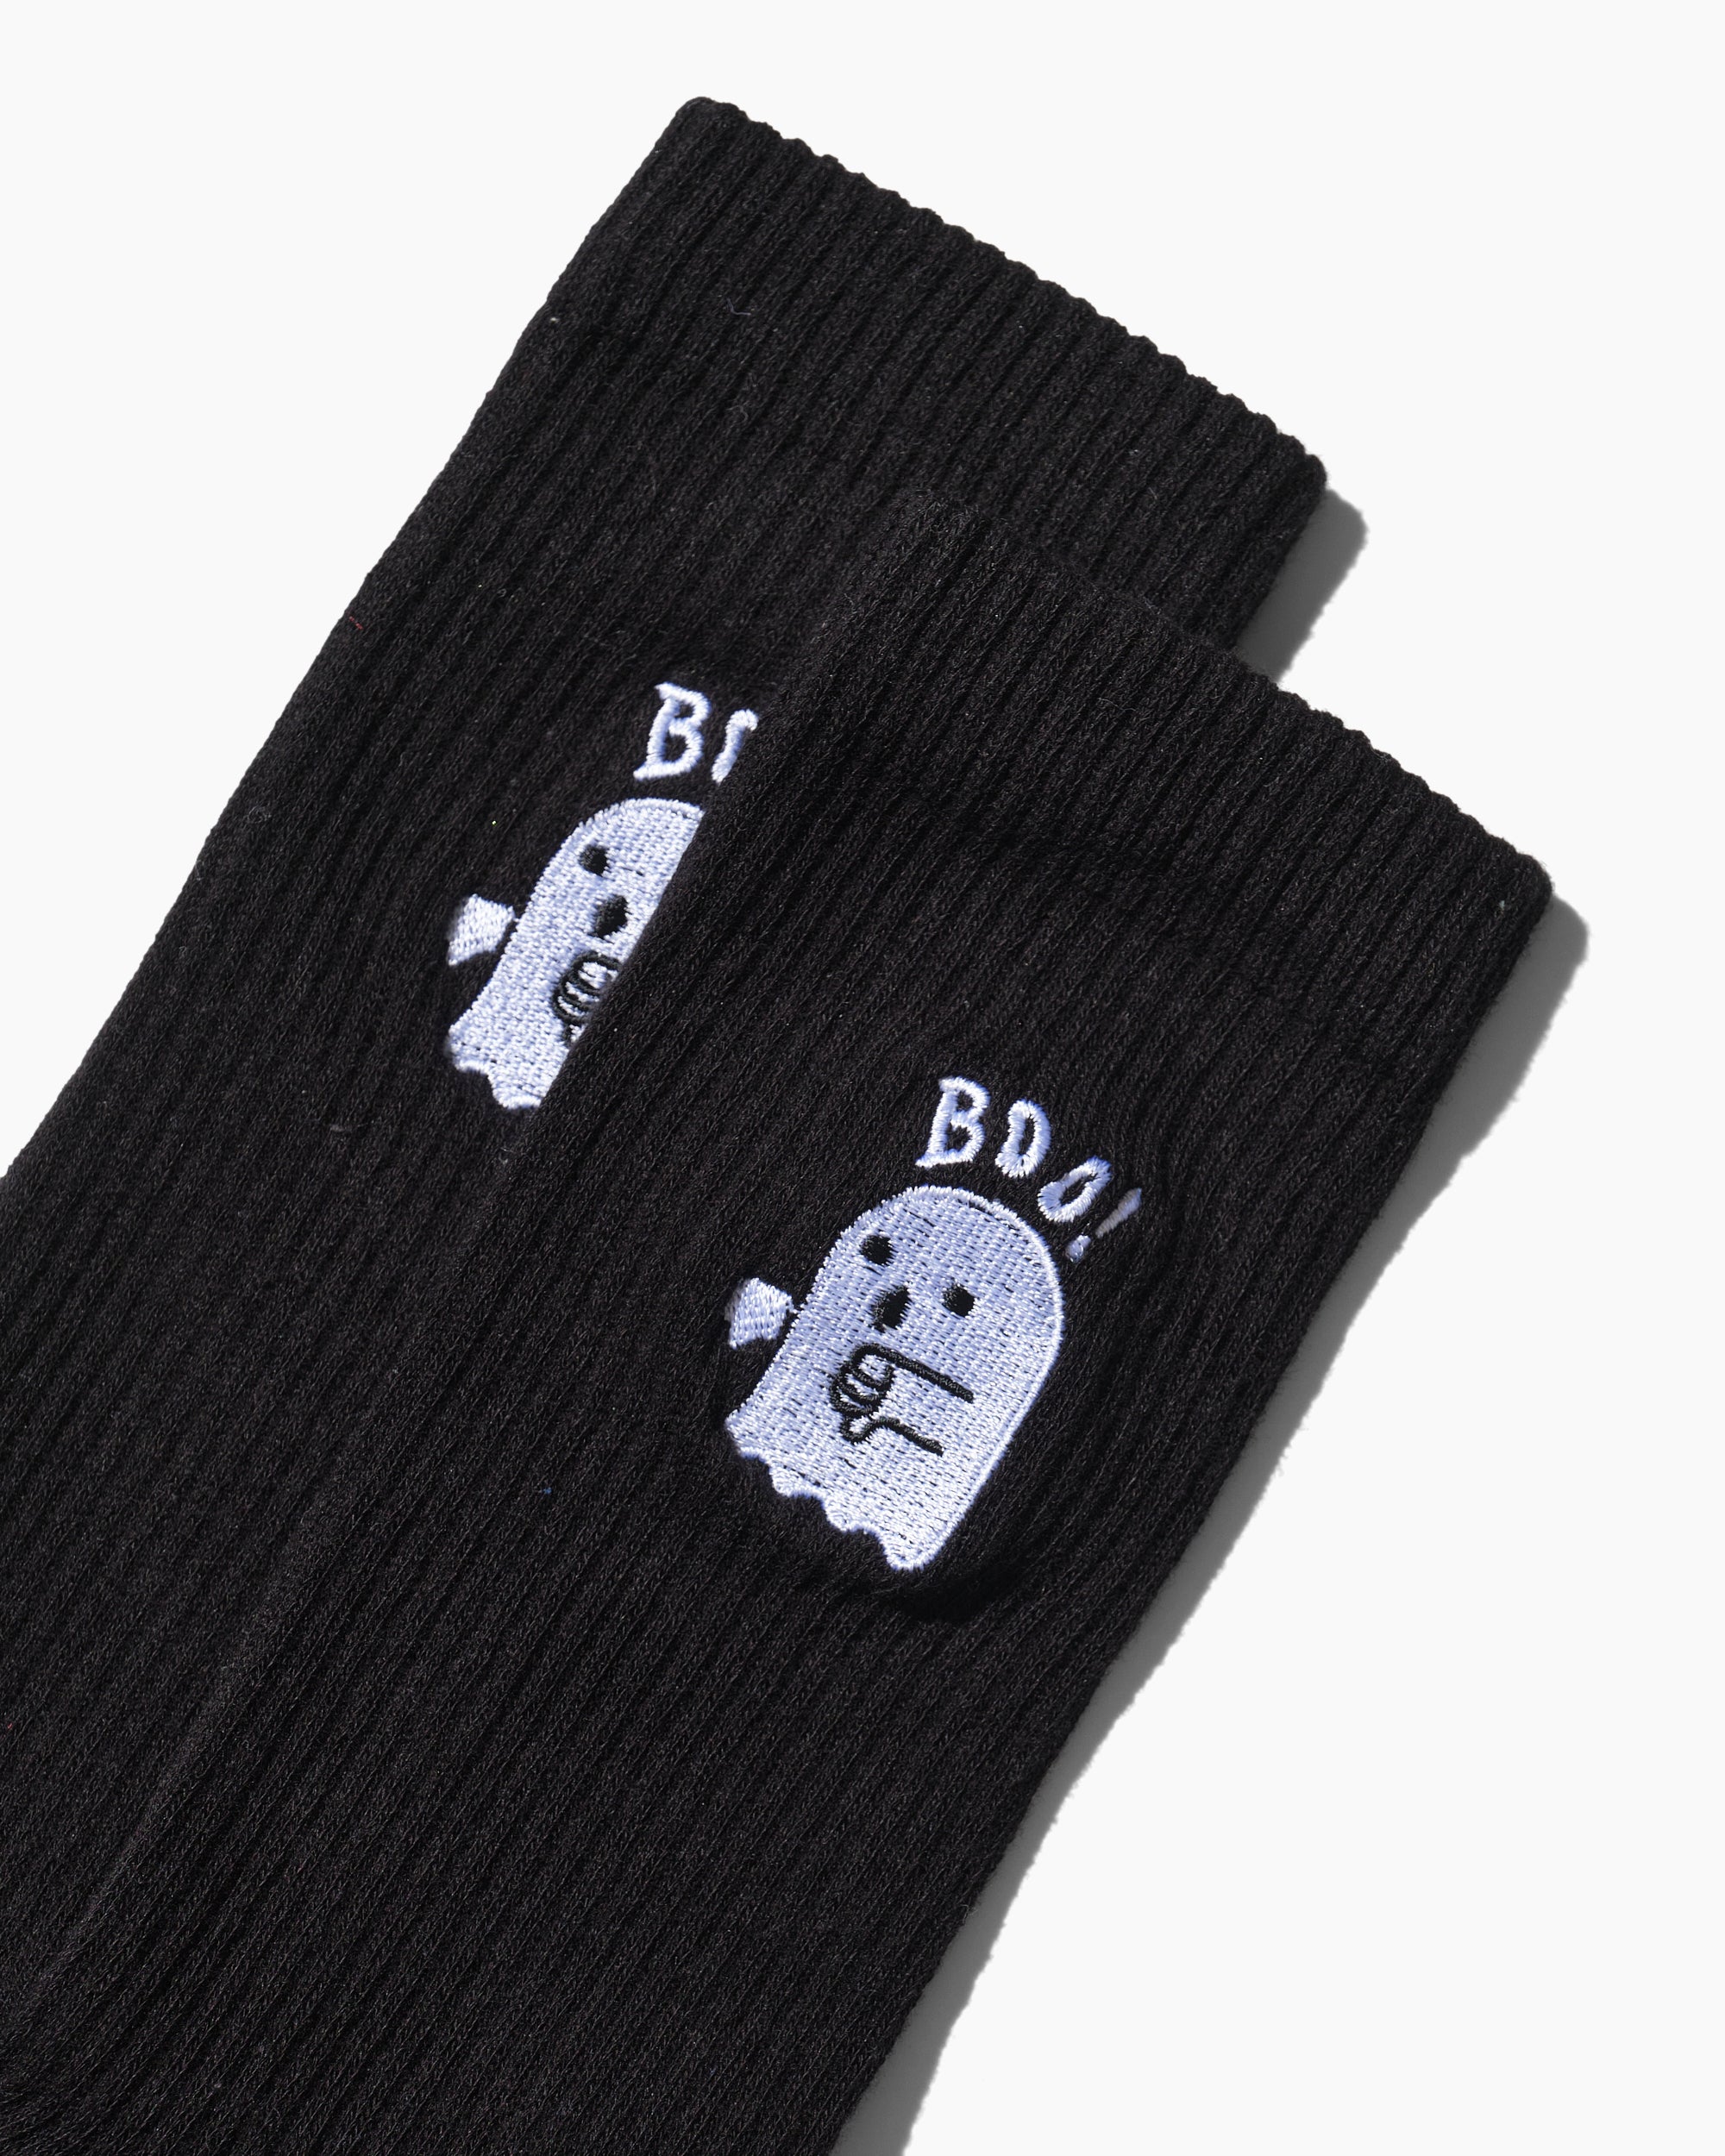 Boo Ghost Socks